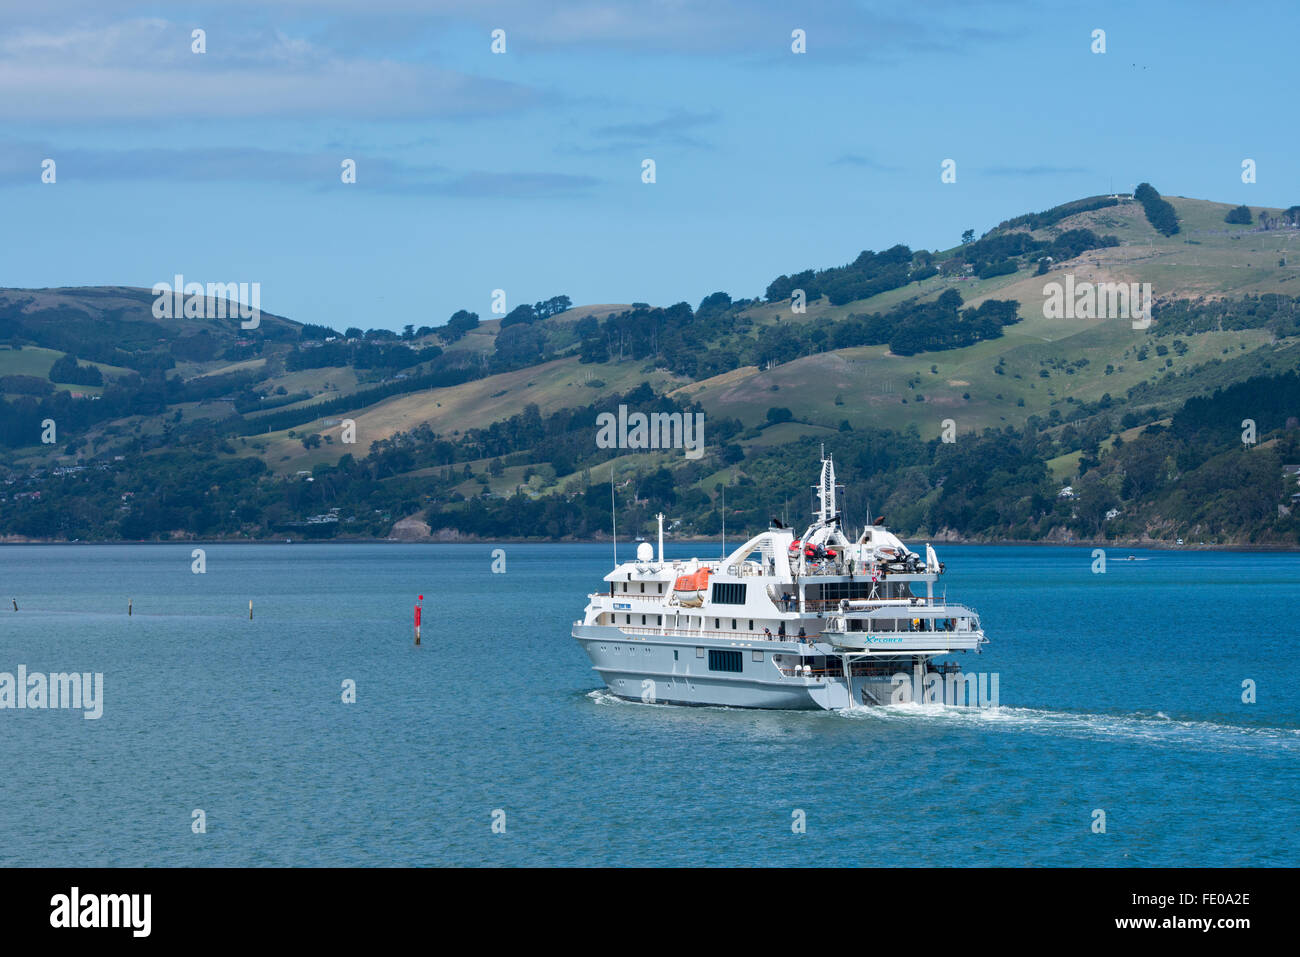 Nouvelle Zélande, île du Sud, Dunedin, Otago Peninsula, près de Port Chalmers. Expedition cruise ship, découvreur de corail. Banque D'Images